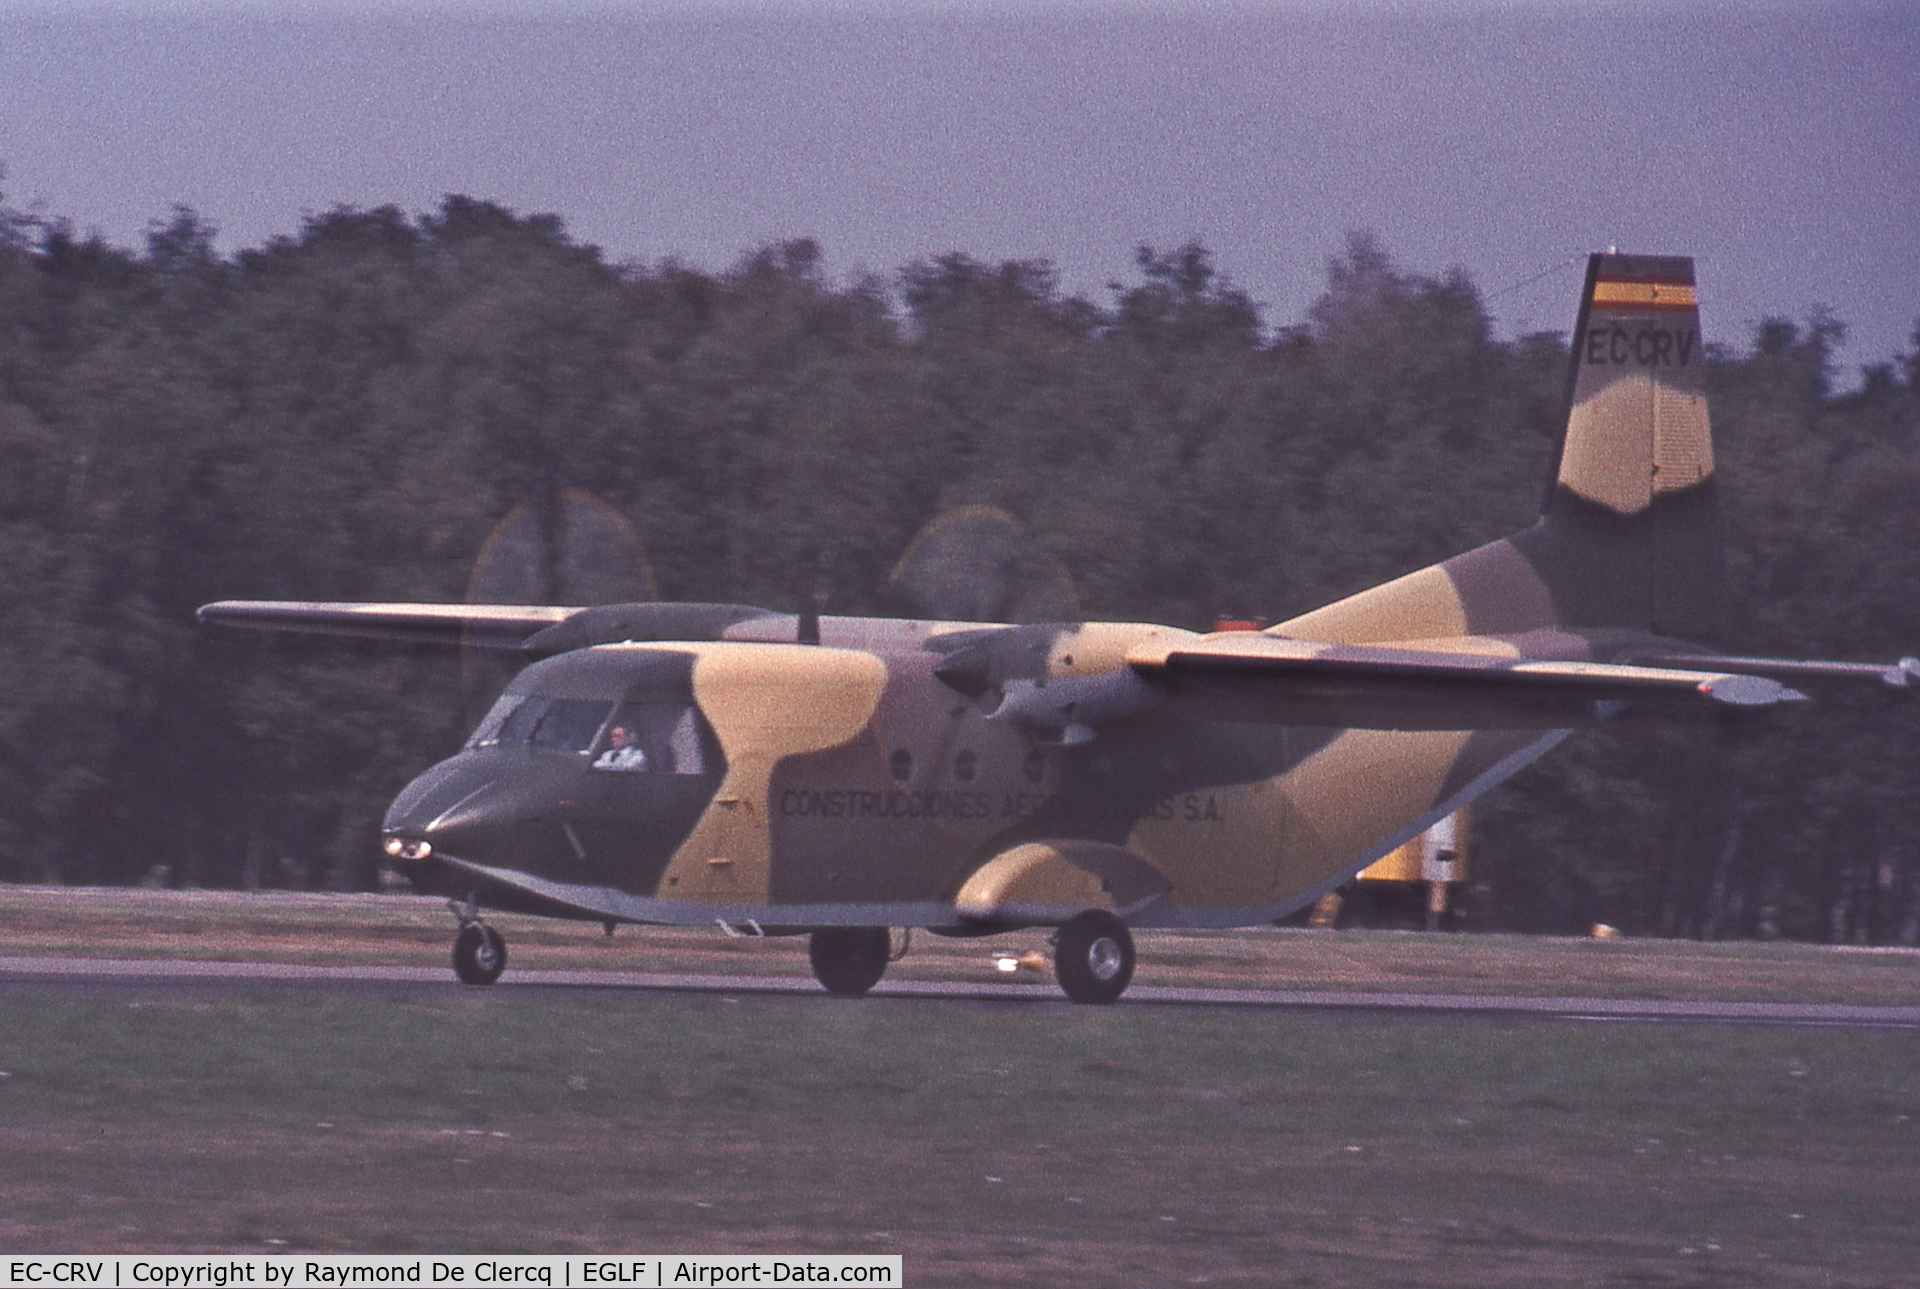 EC-CRV, CASA C-212-100 Aviocar C/N 009, September 1976 Airshow